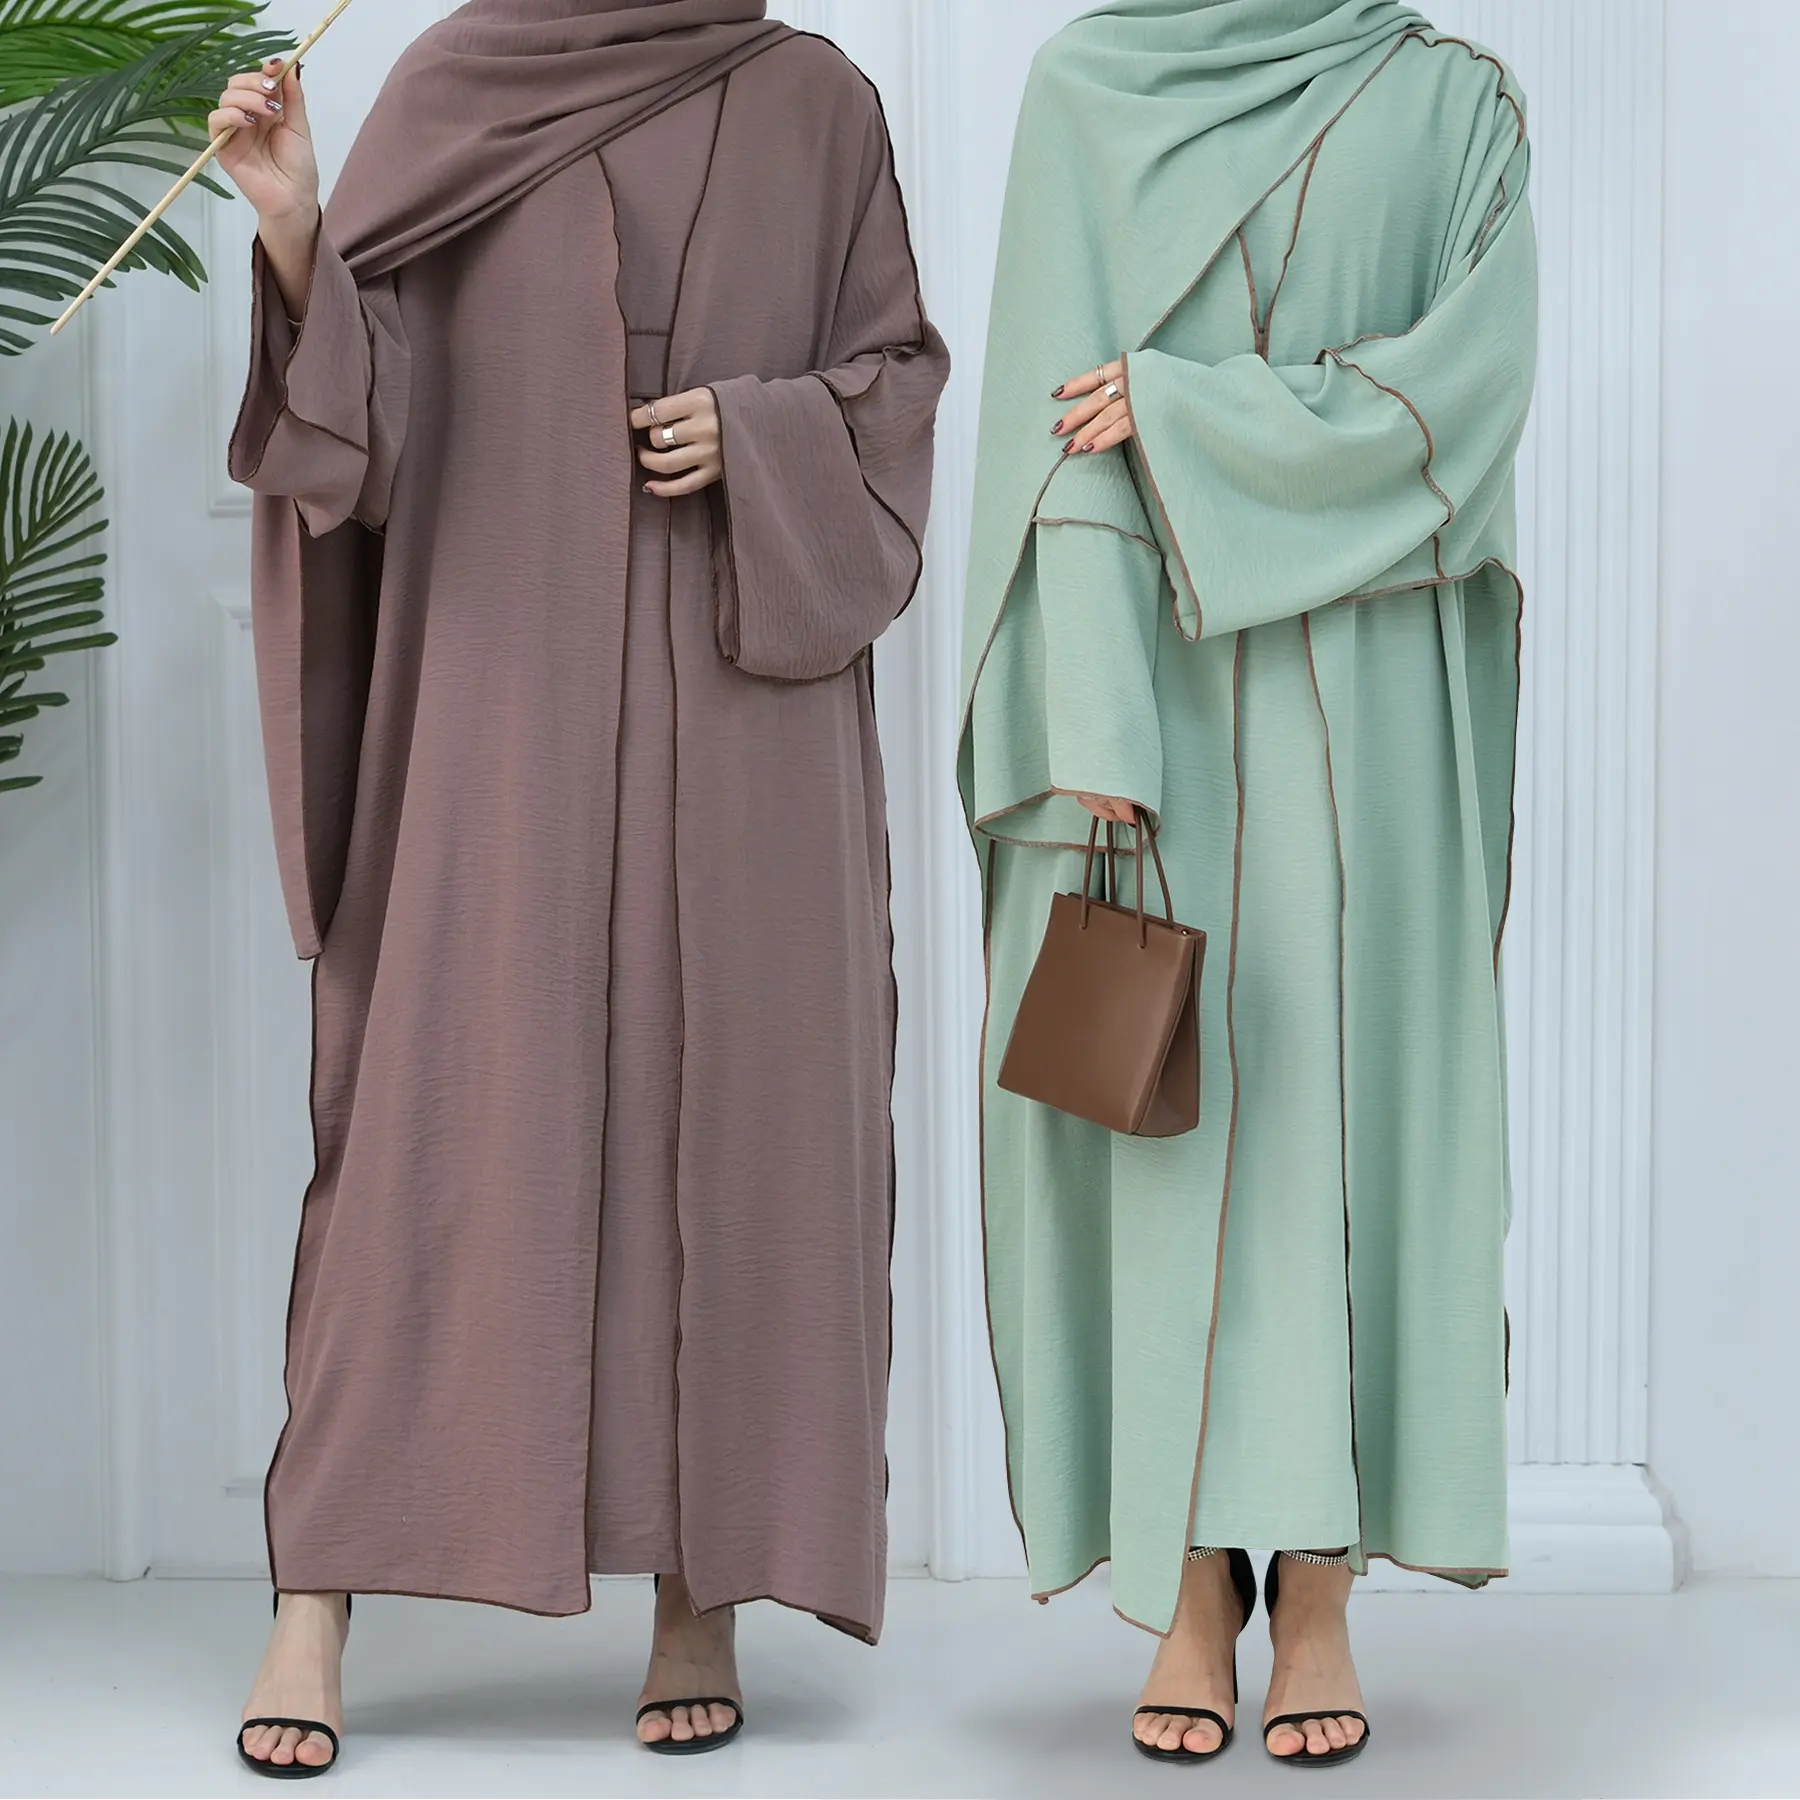 חדש צנוע אבאיה קמט פוליאסטר עיד דובאי פתוח אבאיה עם שמלה פנימית ללא שרוולים בגדים אסלאמיים אבאיה נשים מוסלמיות שמלה